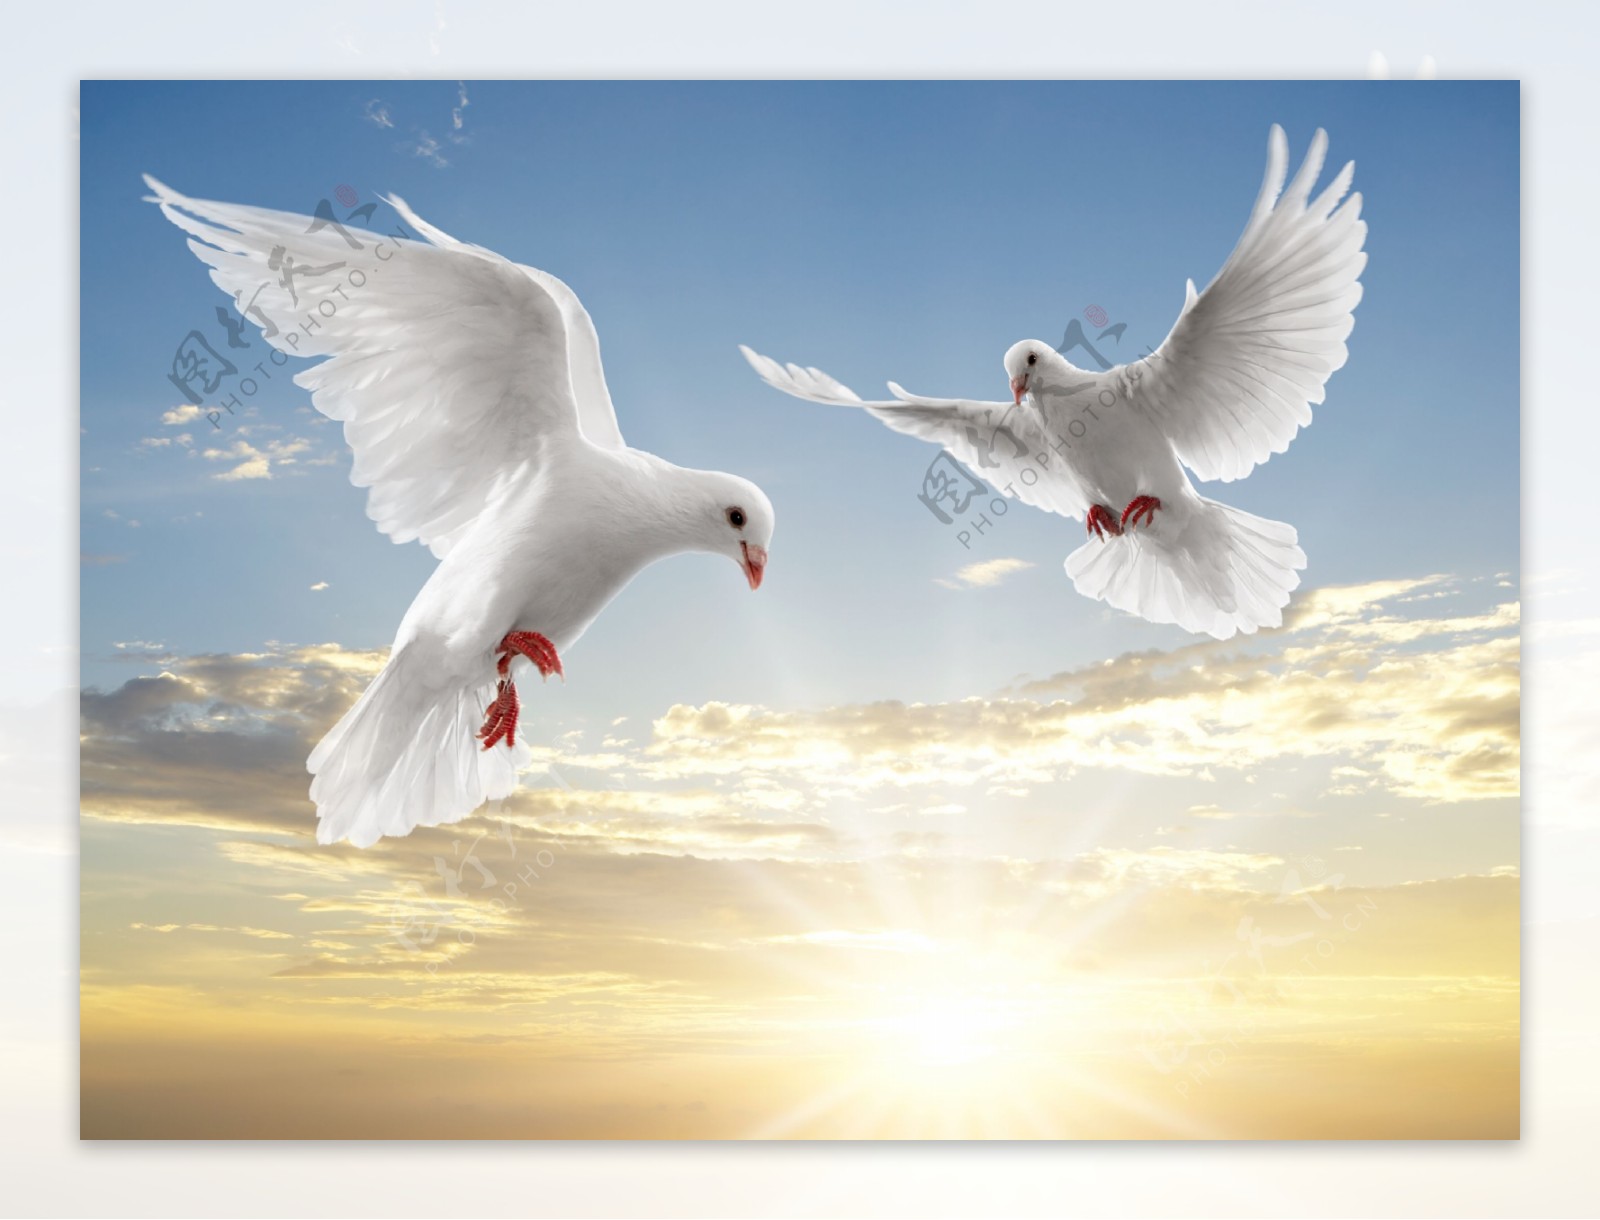 蓝天中飞翔的白鸽高清图片